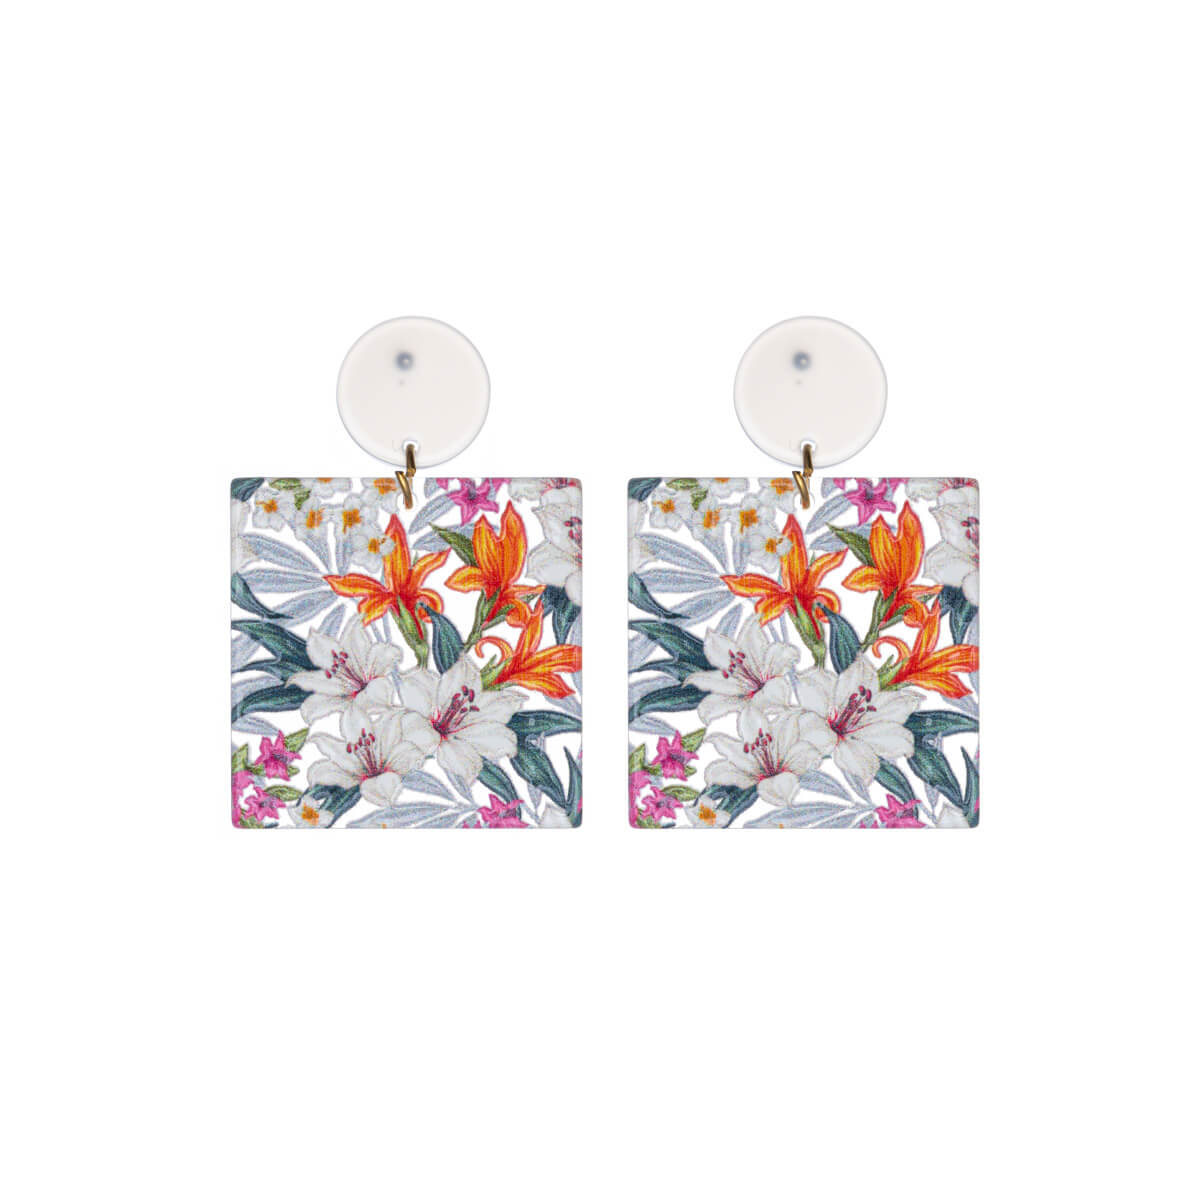 Square flower earrings